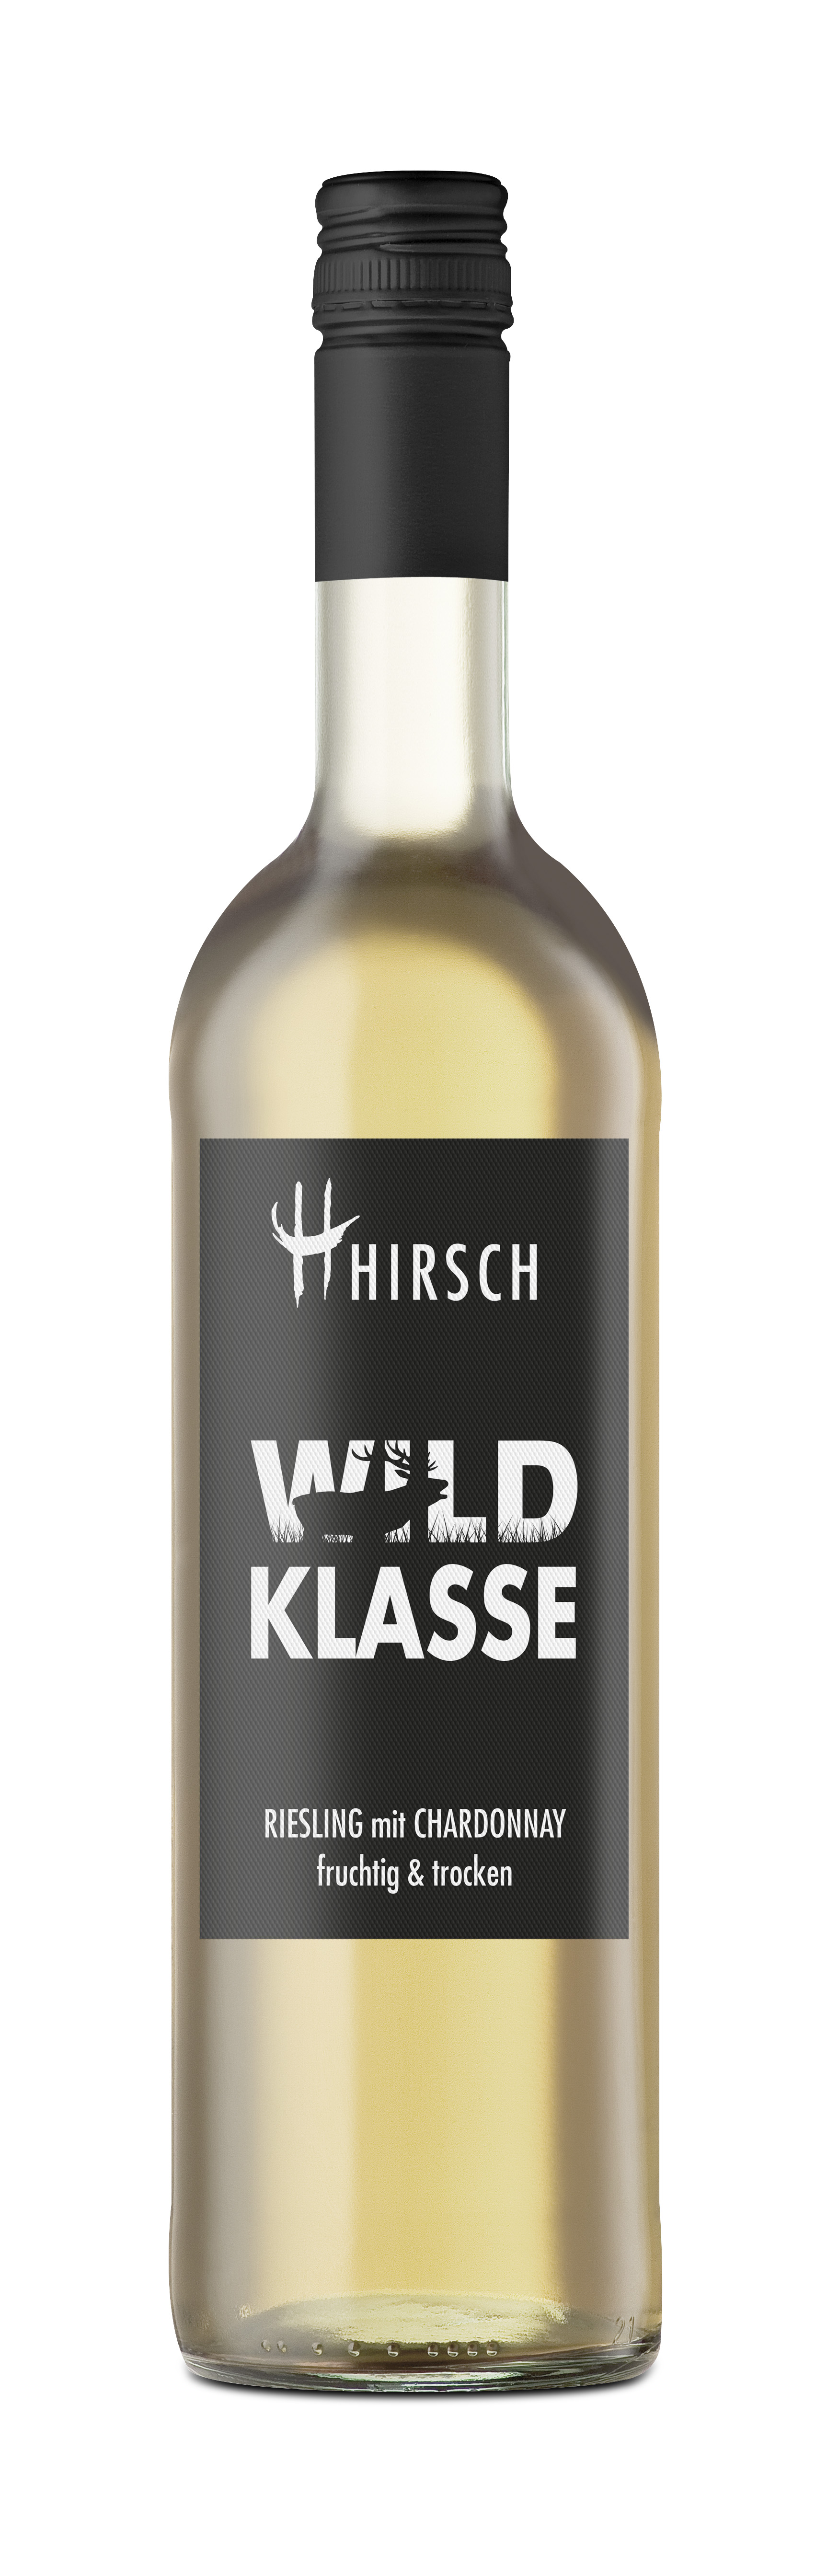 2023 Riesling mit Chardonnay "Wildklasse" 0,75 L - Hirsch